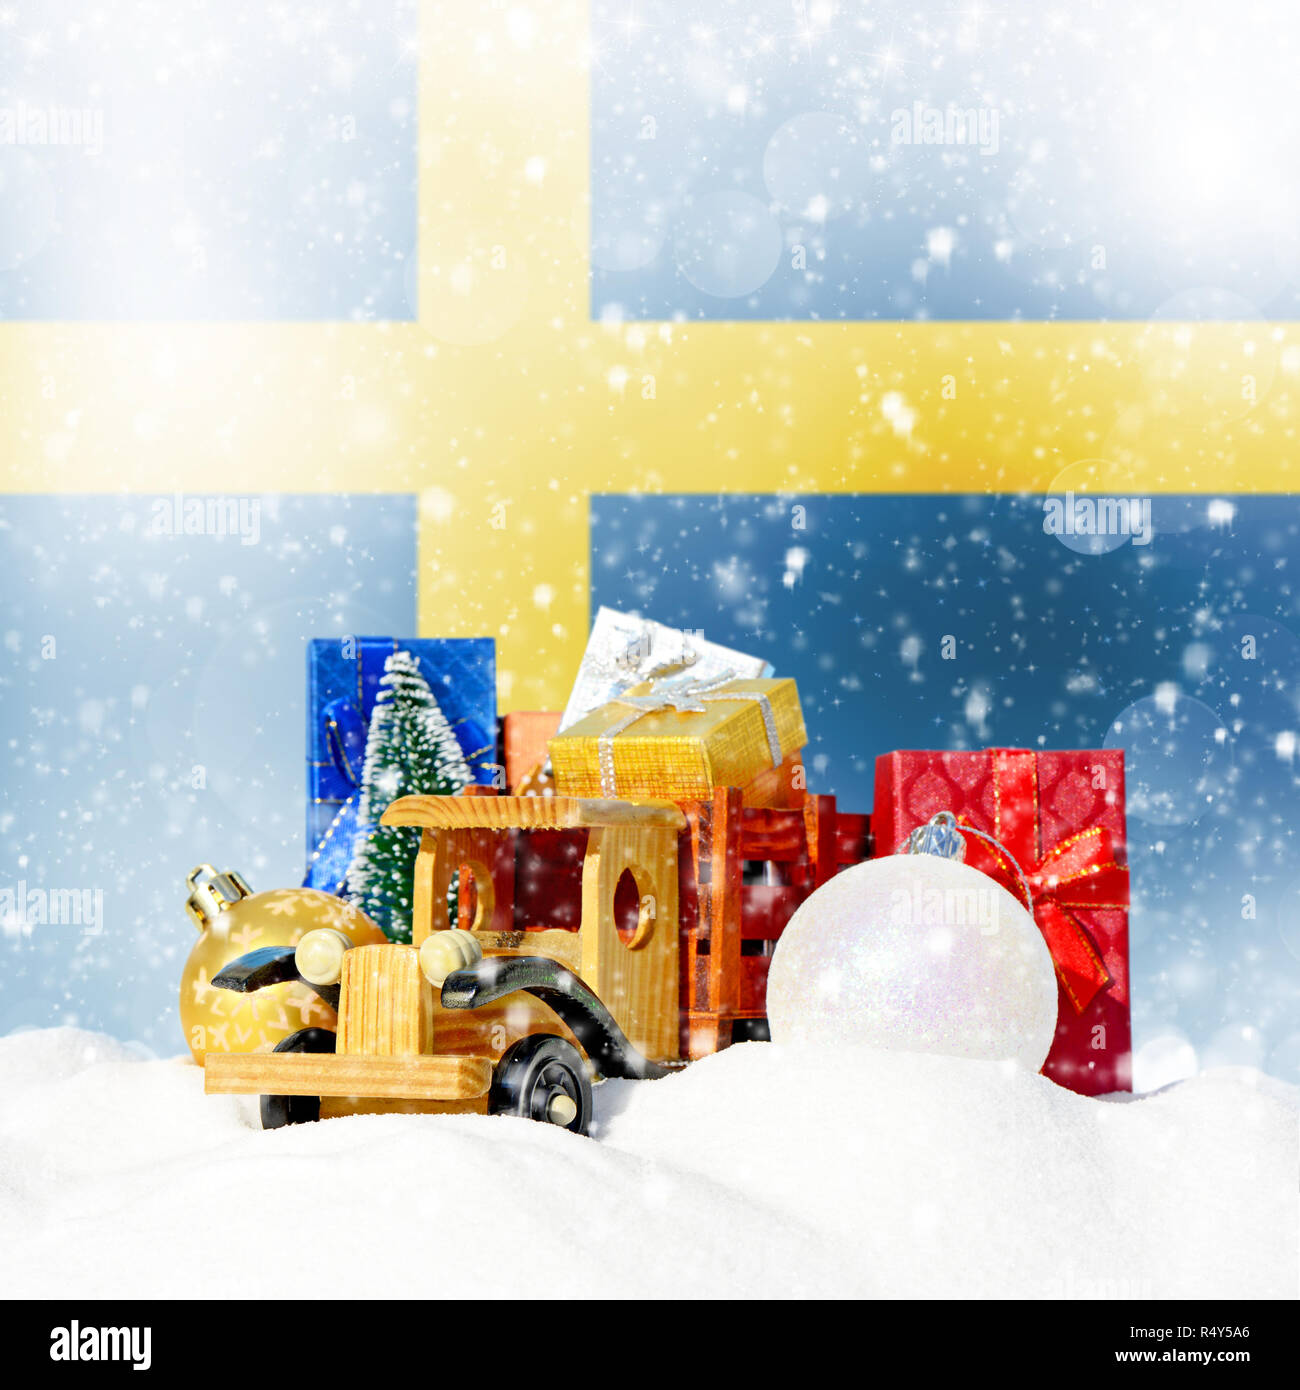 Weihnachten Hintergrund. Spielzeug-LKW mit Geschenken, Neues Jahr Tanne, Kugeln im Schneetreiben und schwedische Flagge Stockfoto